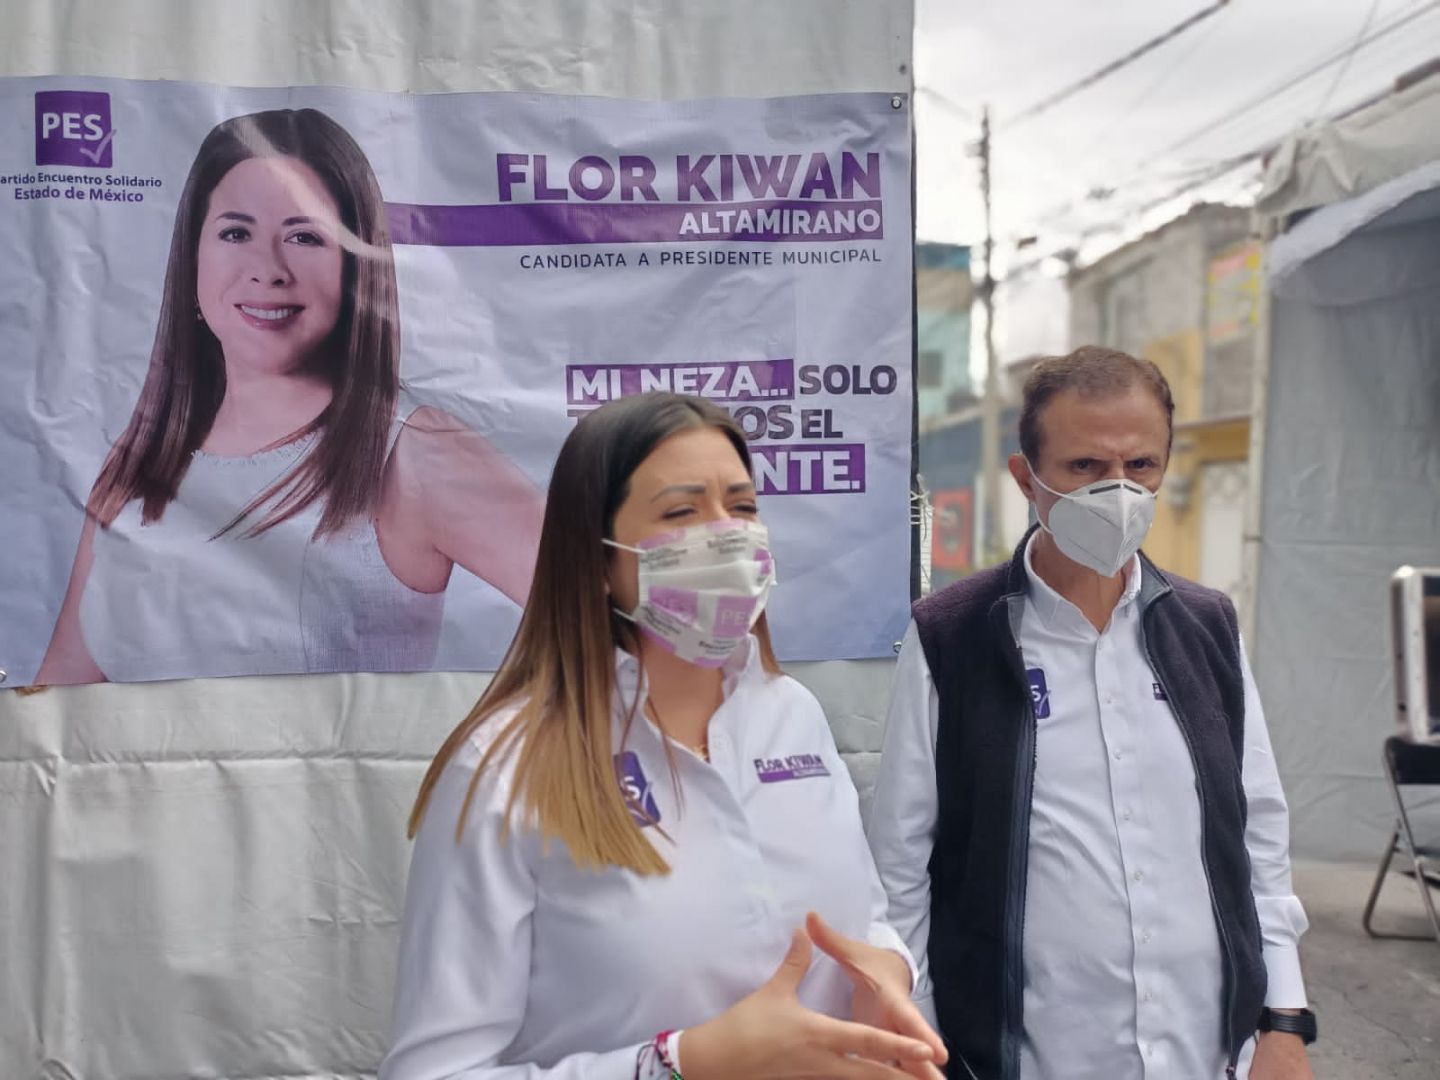 Flor kiwan Altamirano, única mujer que aspira a la presidencia municipal de Neza